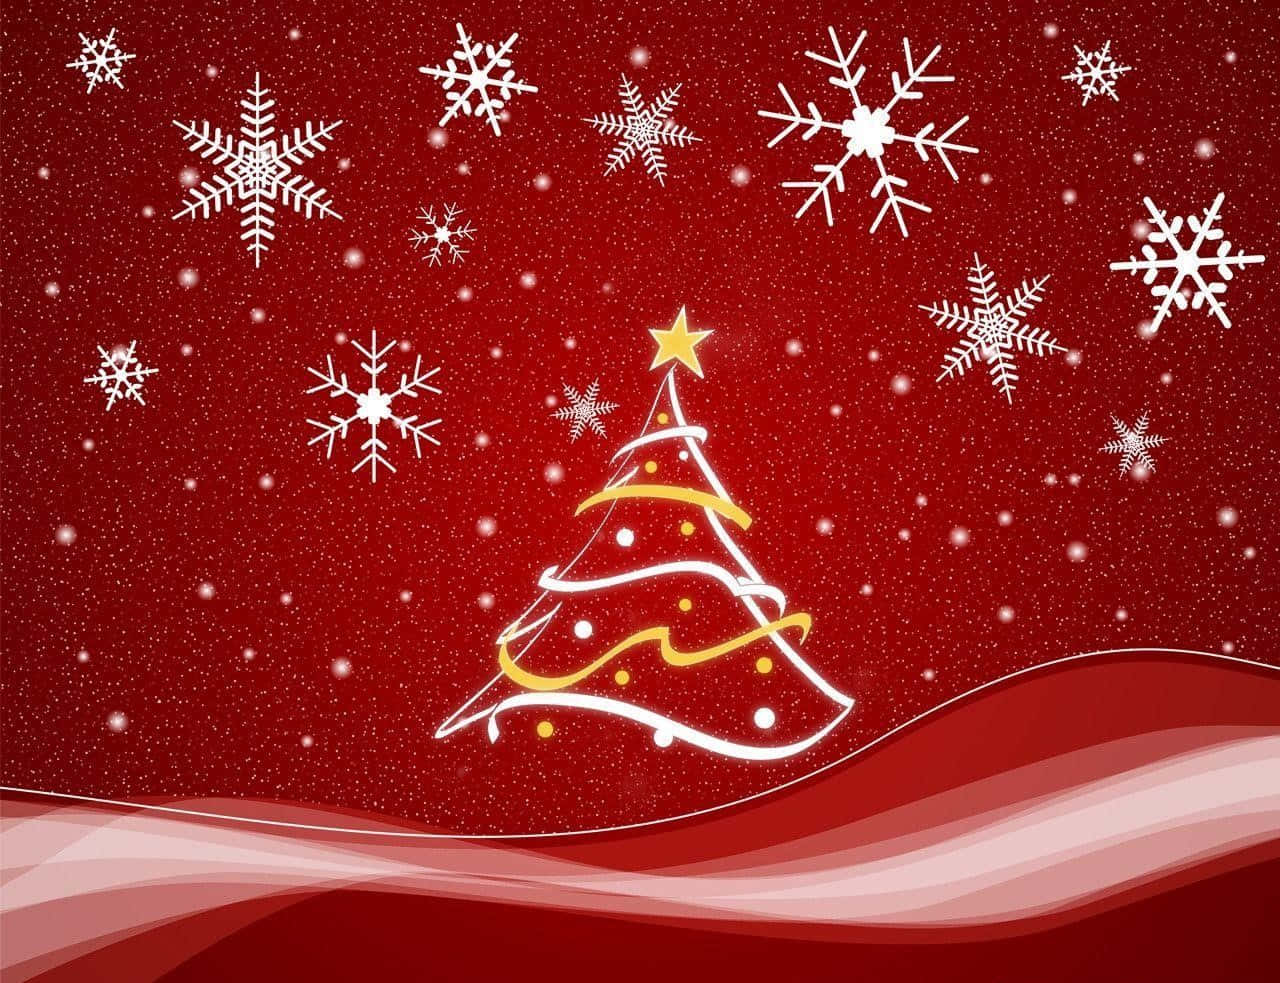 Enchanting Red Aesthetic Christmas Scene Wallpaper